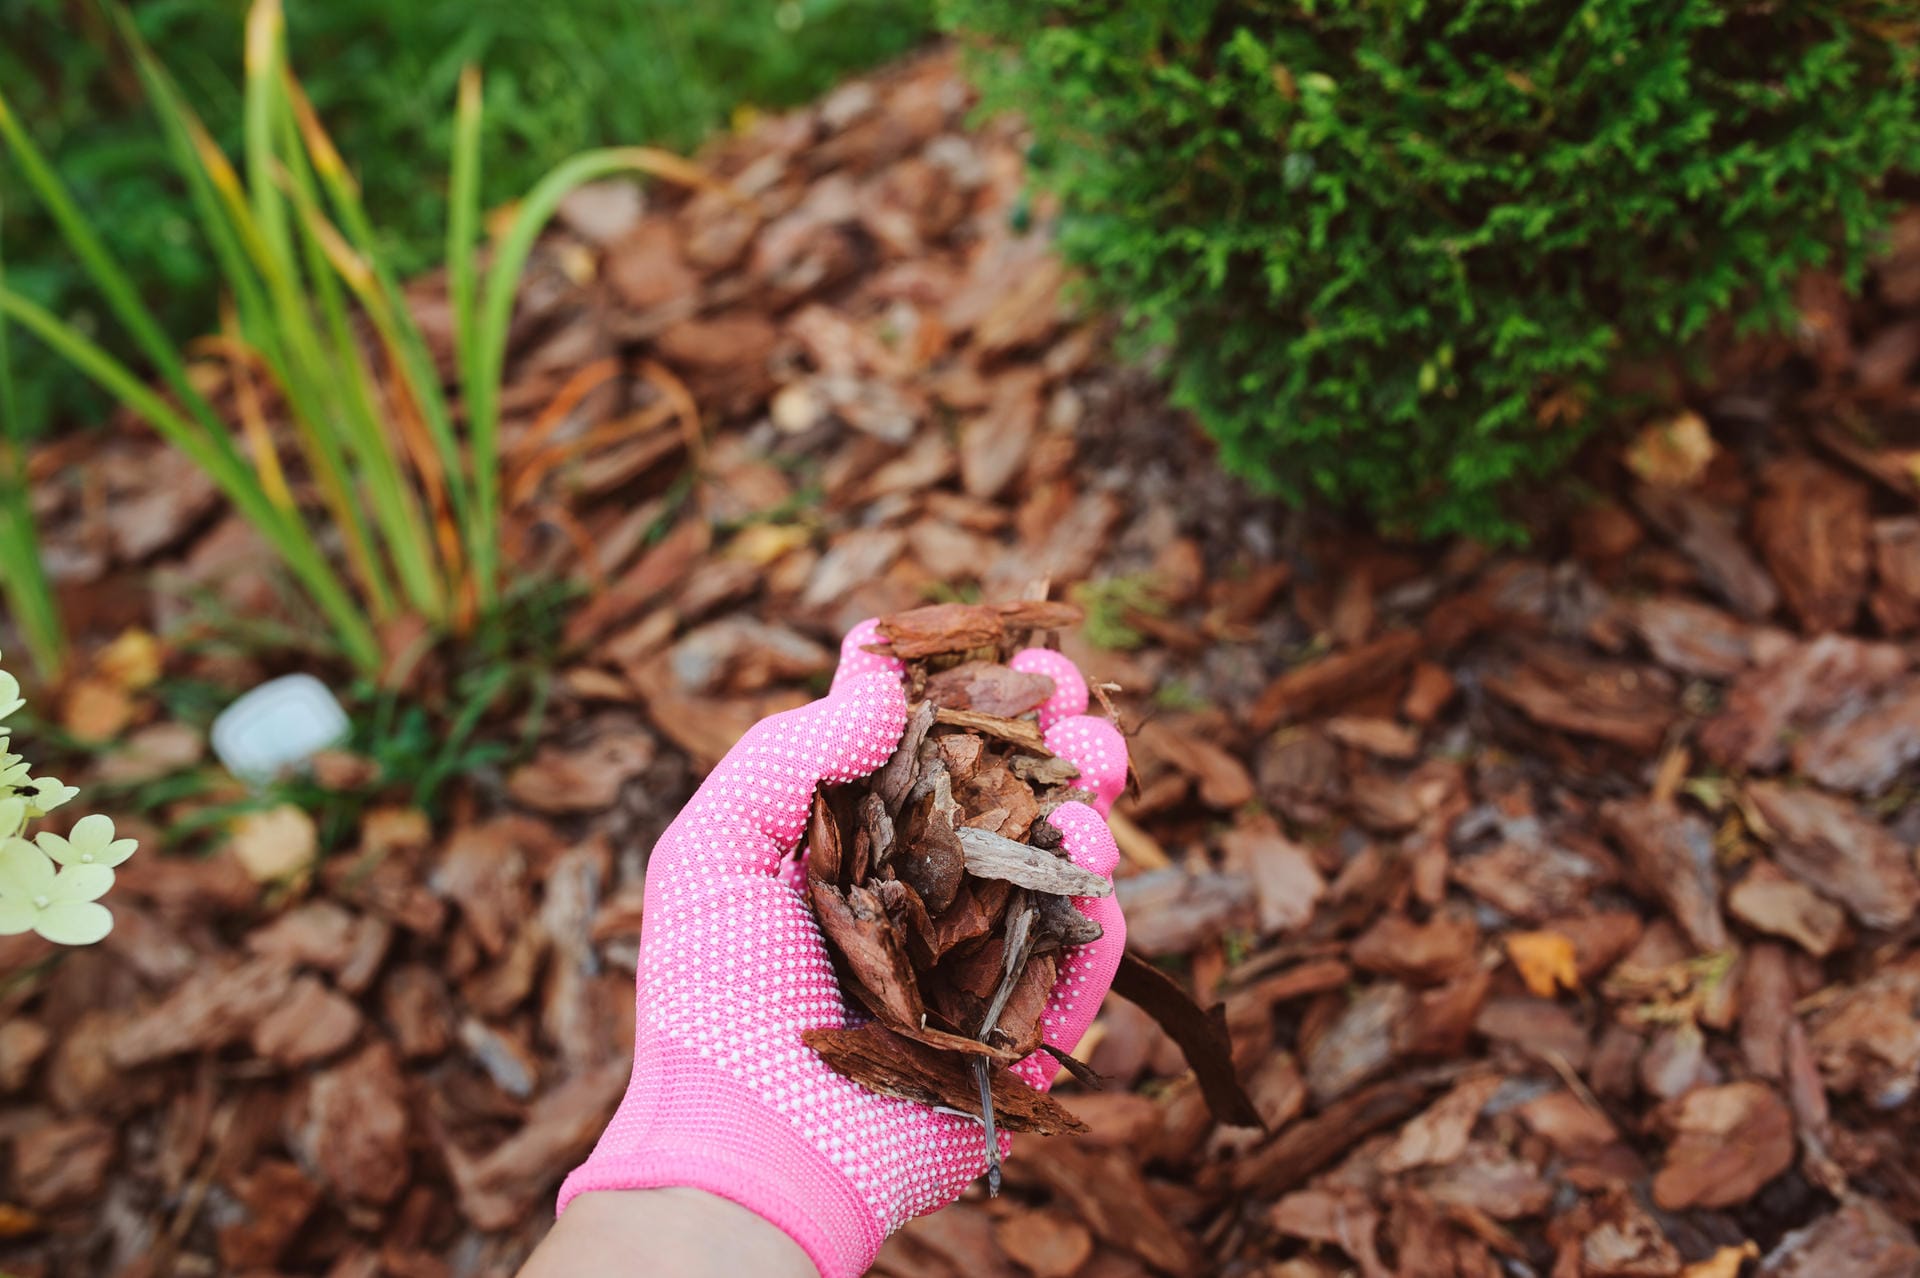 Nach einem Baumschnitt fallen reichlich Grünabfälle an. Mit einem Schredder lässt sich der Baumschnitt jedoch gut verwerten. Kleinere Äste und Laub lassen sich hervorragend kompostieren. Größere Astabfälle kann man gut zu Mulch verarbeiten. Verteilt auf dem Gartenbeet schützt er den Boden vor Austrocknung, sichert ihn aber auch vor starken Niederschlägen. Tipp: Keine Lust auf noch mehr Gartenarbeit? Bei Kompostwerken können Sie Ihren Baumschnitt in der Regel kostengünstig abgeben.